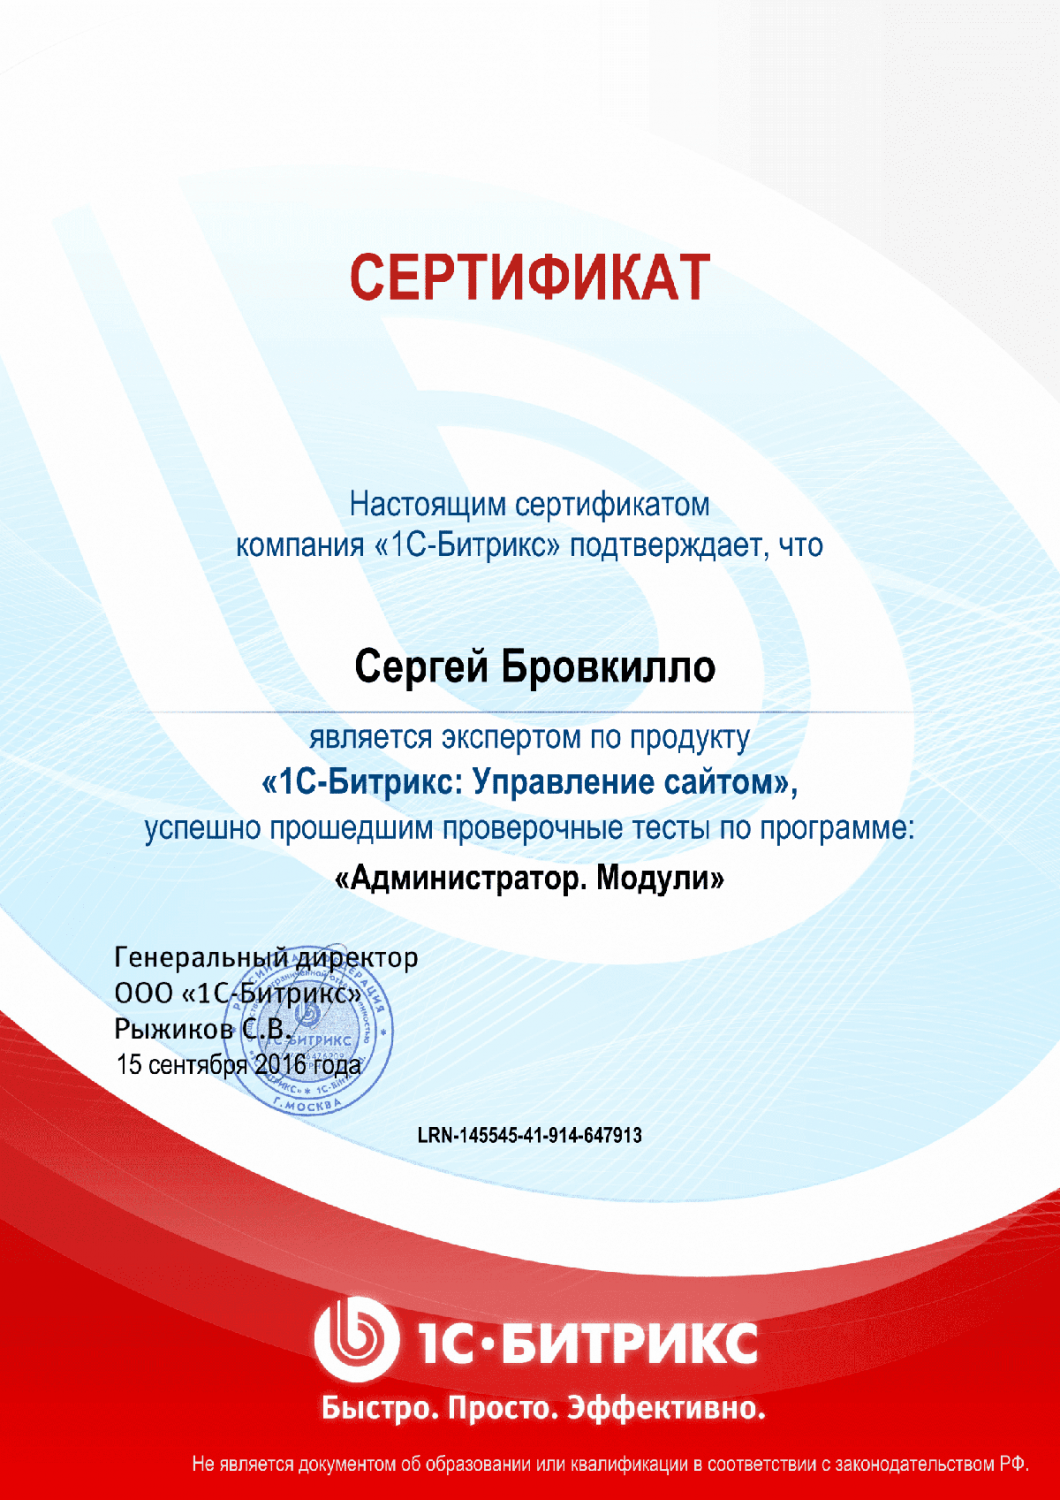 Сертификат эксперта по программе "Администратор. Модули" в Сочи